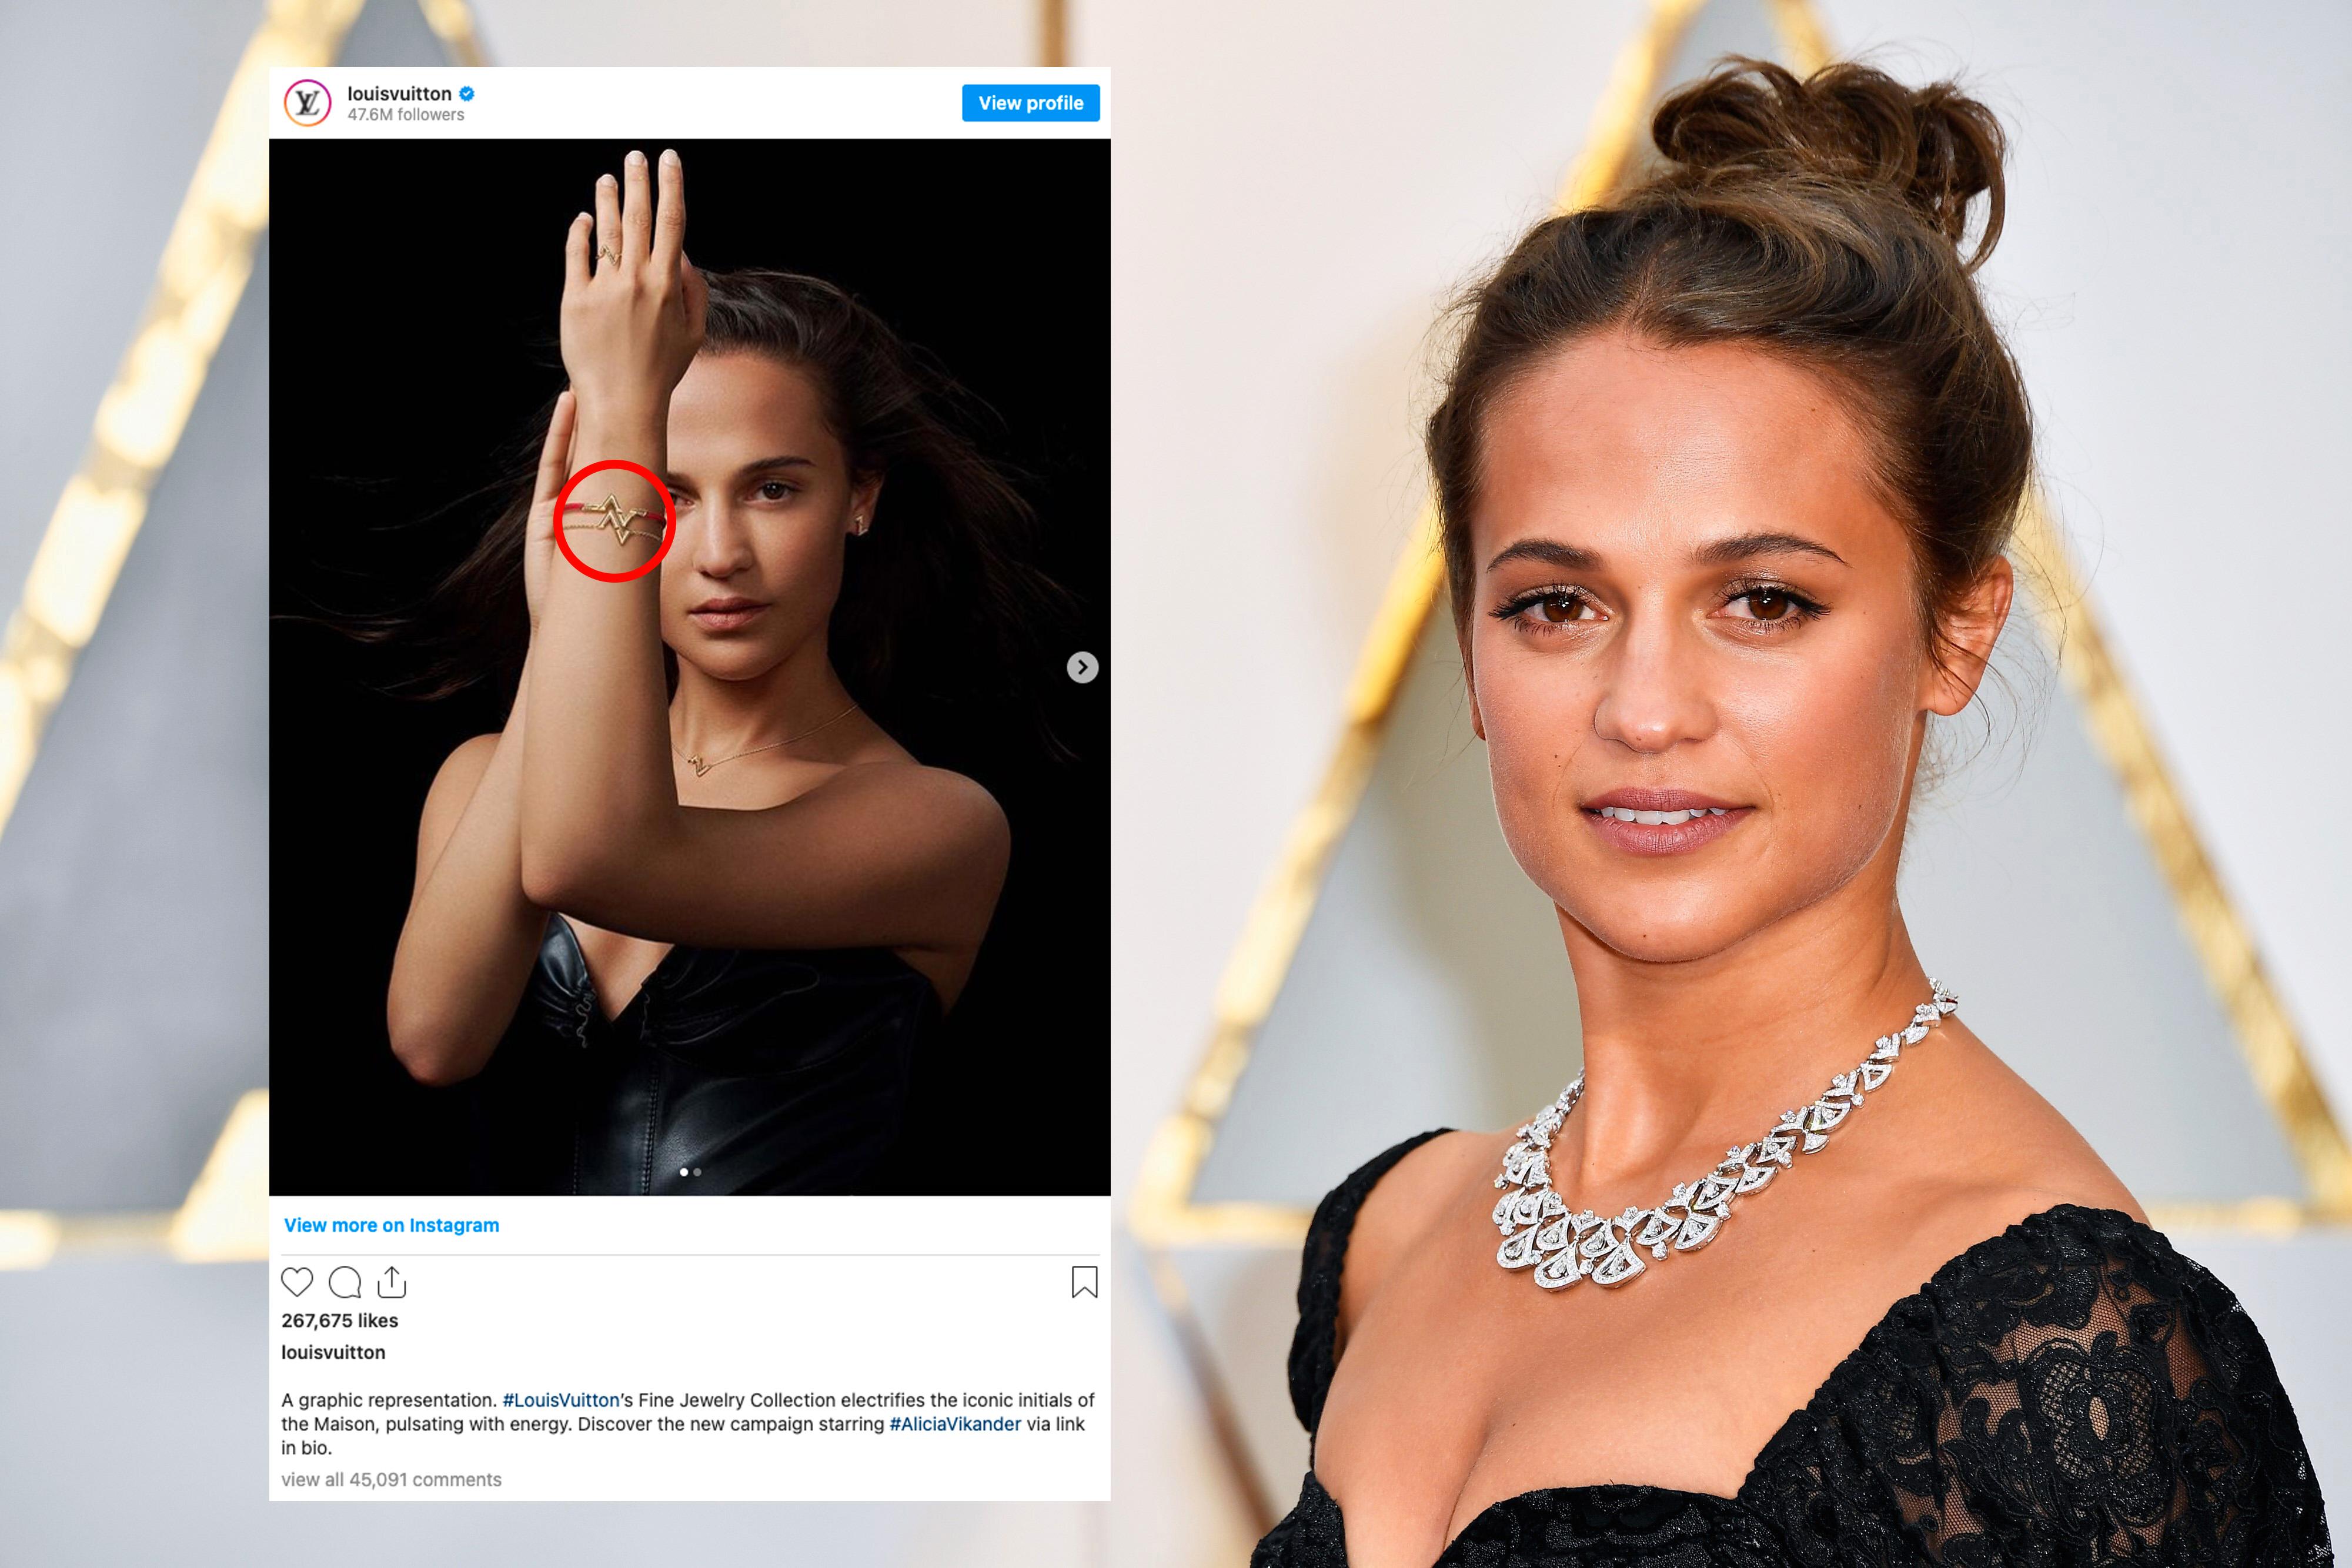 FRONTER KAMPANJE: Den svenske skuespilleren Alicia Vikander fronter luksusmotehusets nye smykkekolleksjon som nå får krass kritikk. 